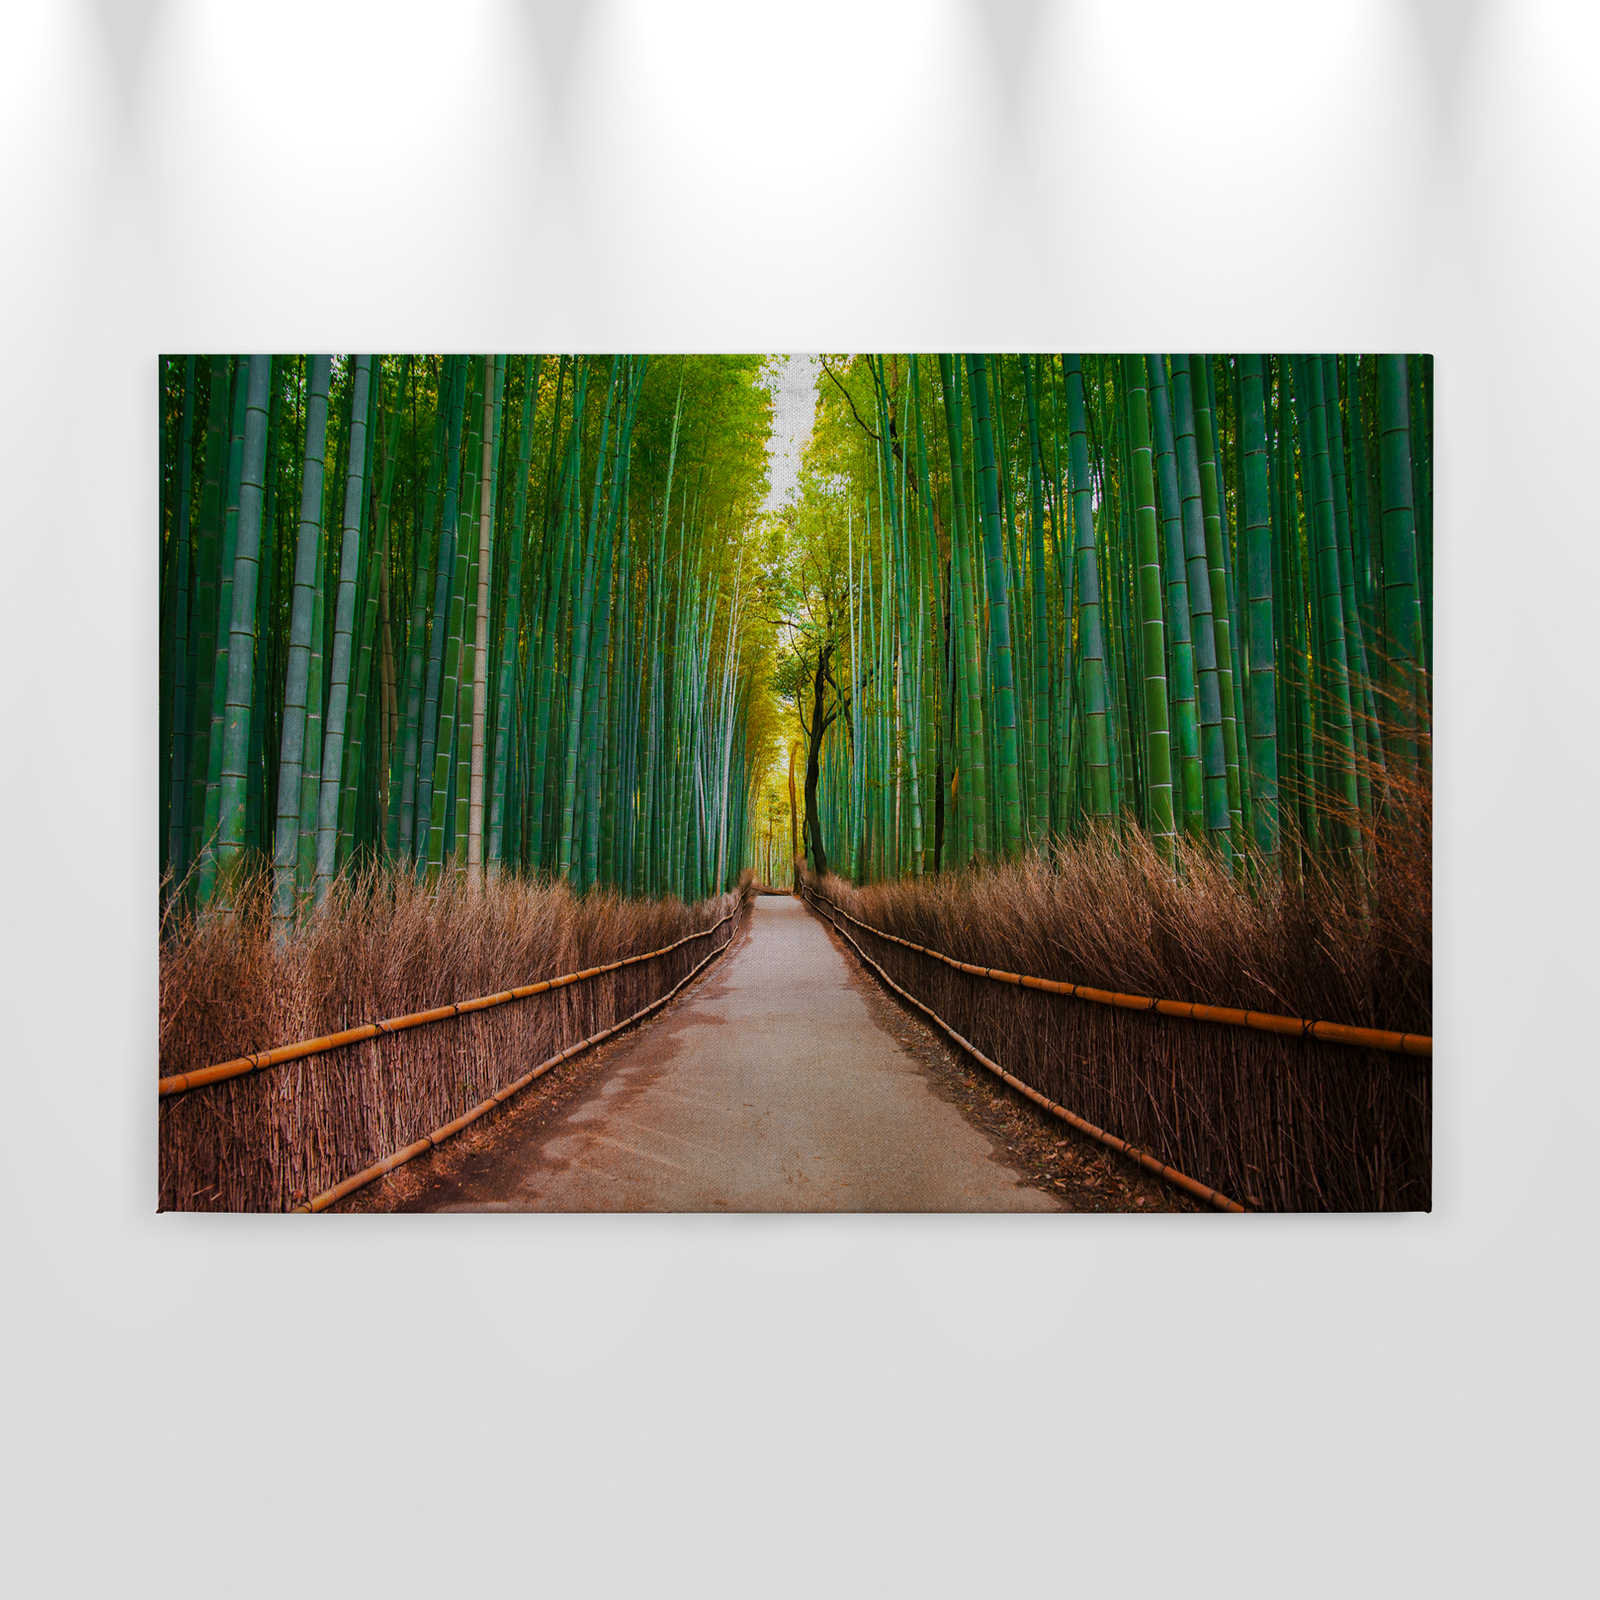             Tela con percorso in bambù naturale - 0,90 m x 0,60 m
        